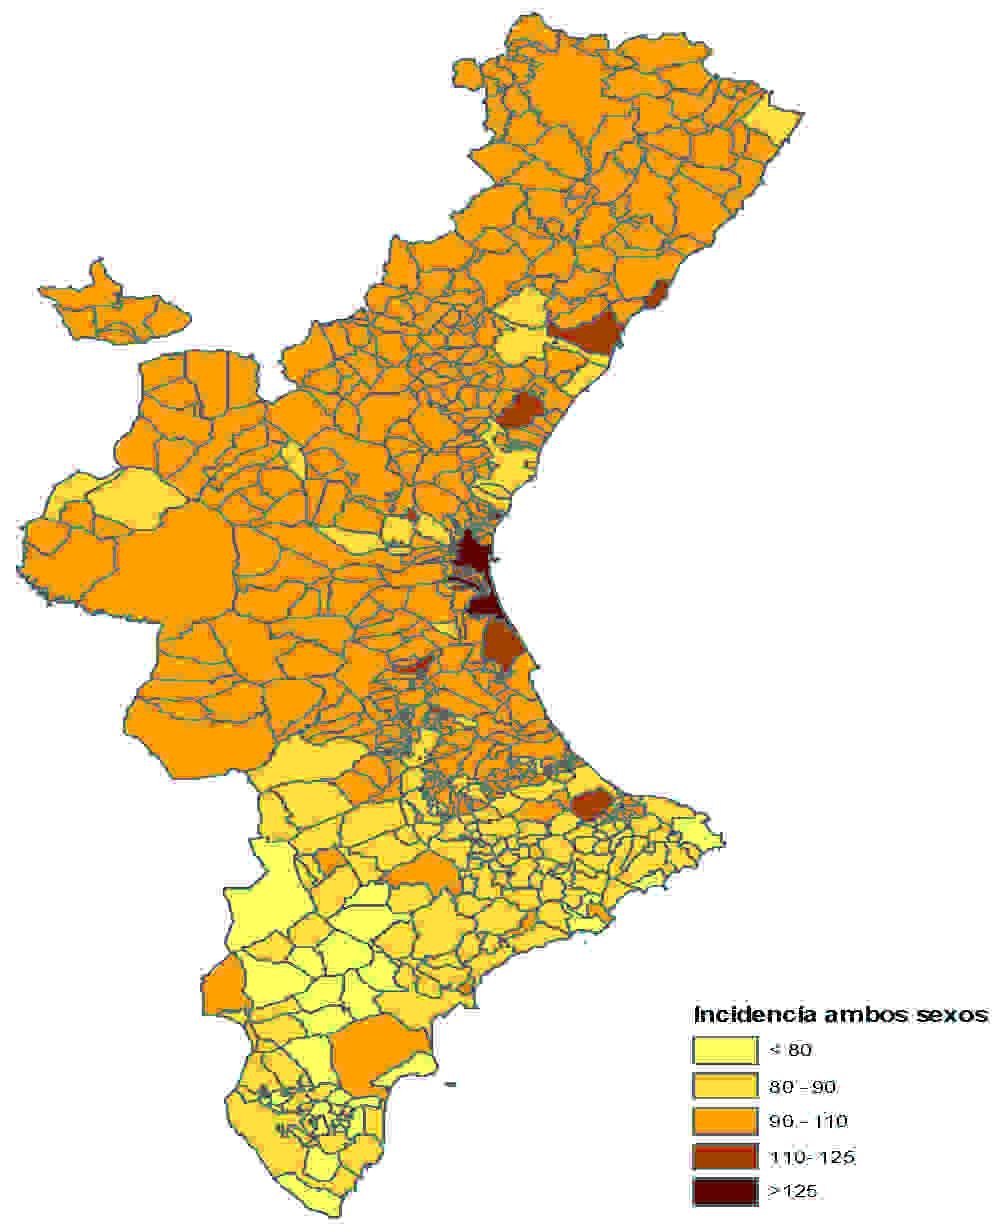 nicipios del área 2 Oropesa, Castellón y Vall d Uixó y Pego del área 12 tienen las RME entre 110 y 125.